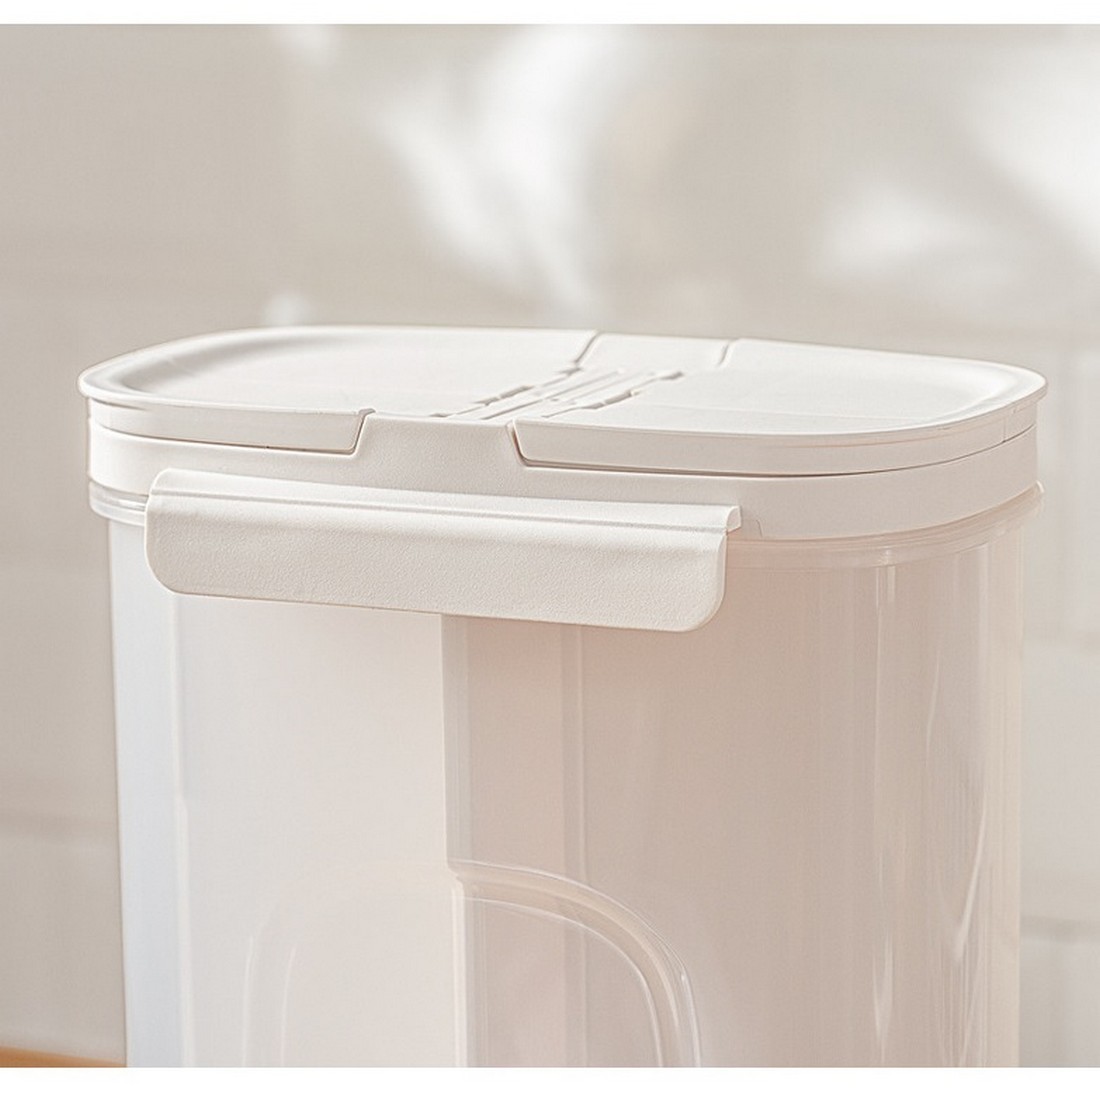 乾物ストッカー パスタ ストッカー 4つの仕切り 取り外し可能 保存容器 透明 キッチン収納 スナック 乾物 ホワイト_画像5